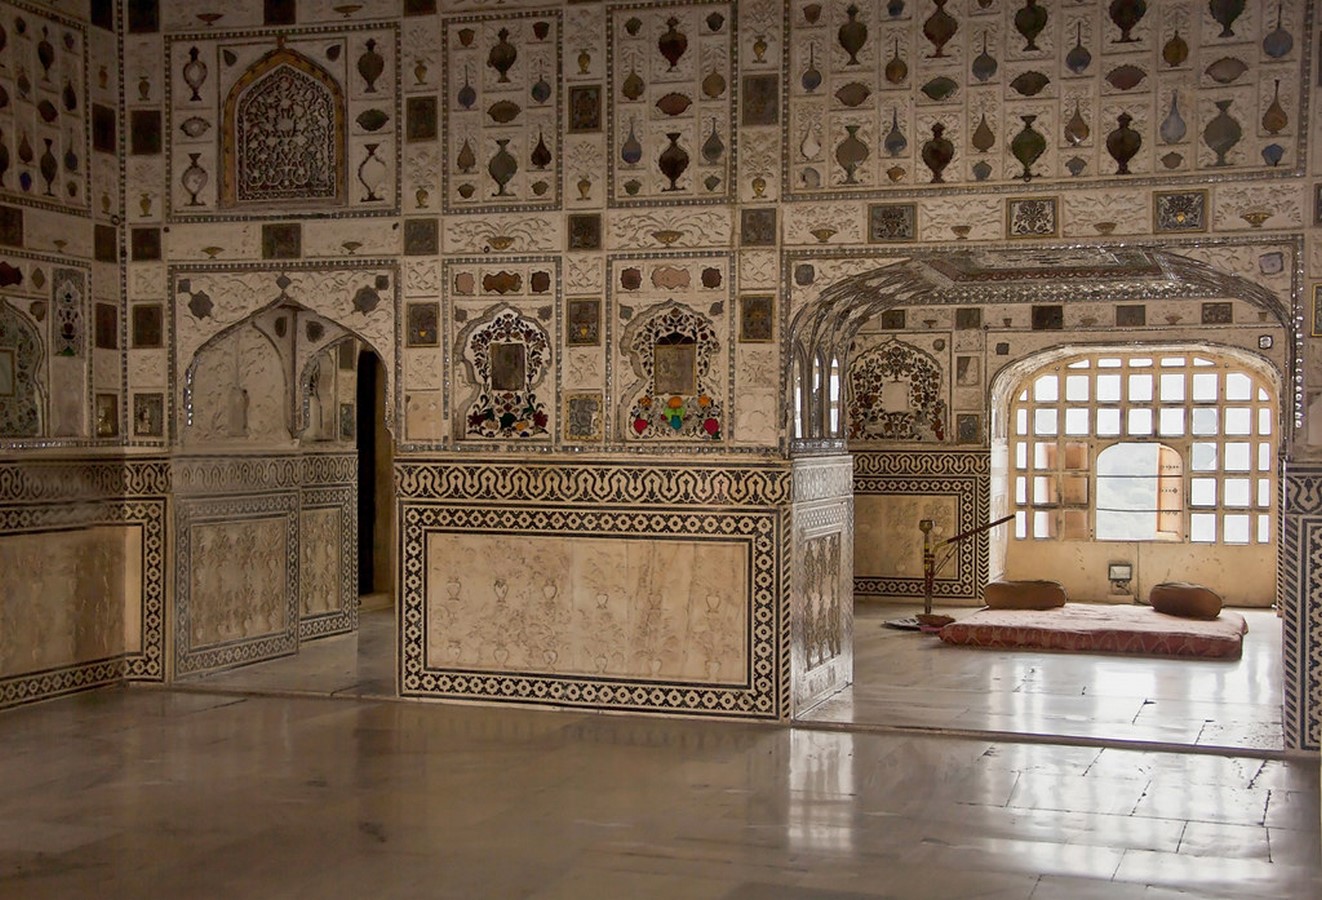 Amer Fort, Jaipur Crown of Jaipur - Sheet9